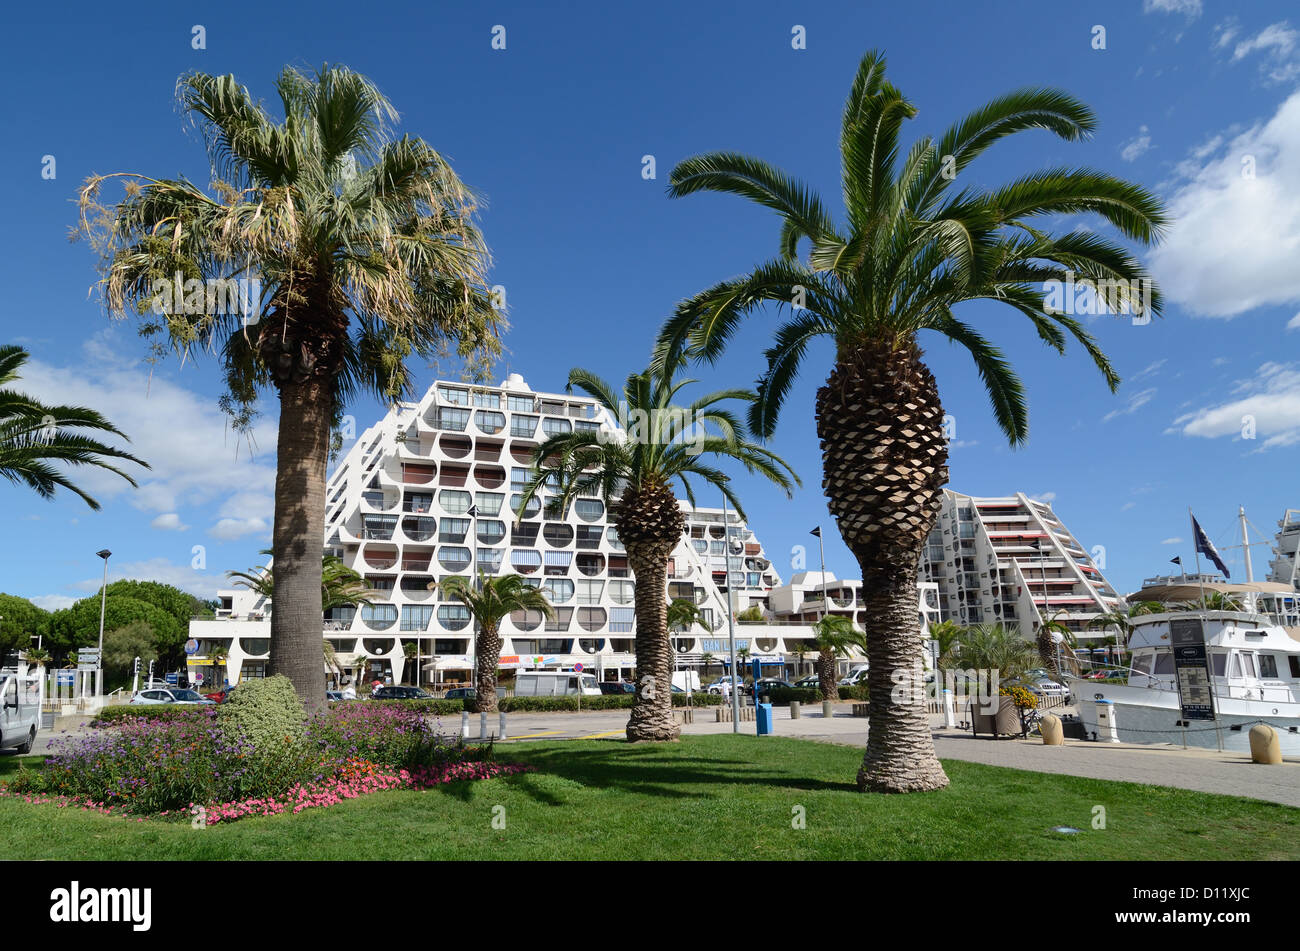 Edificio Delta moderno en forma de pirámide (1971) enmarcado por palmeras y jardín público en la Grande-Motte Tourist Resort y Port Hérault Francia Foto de stock